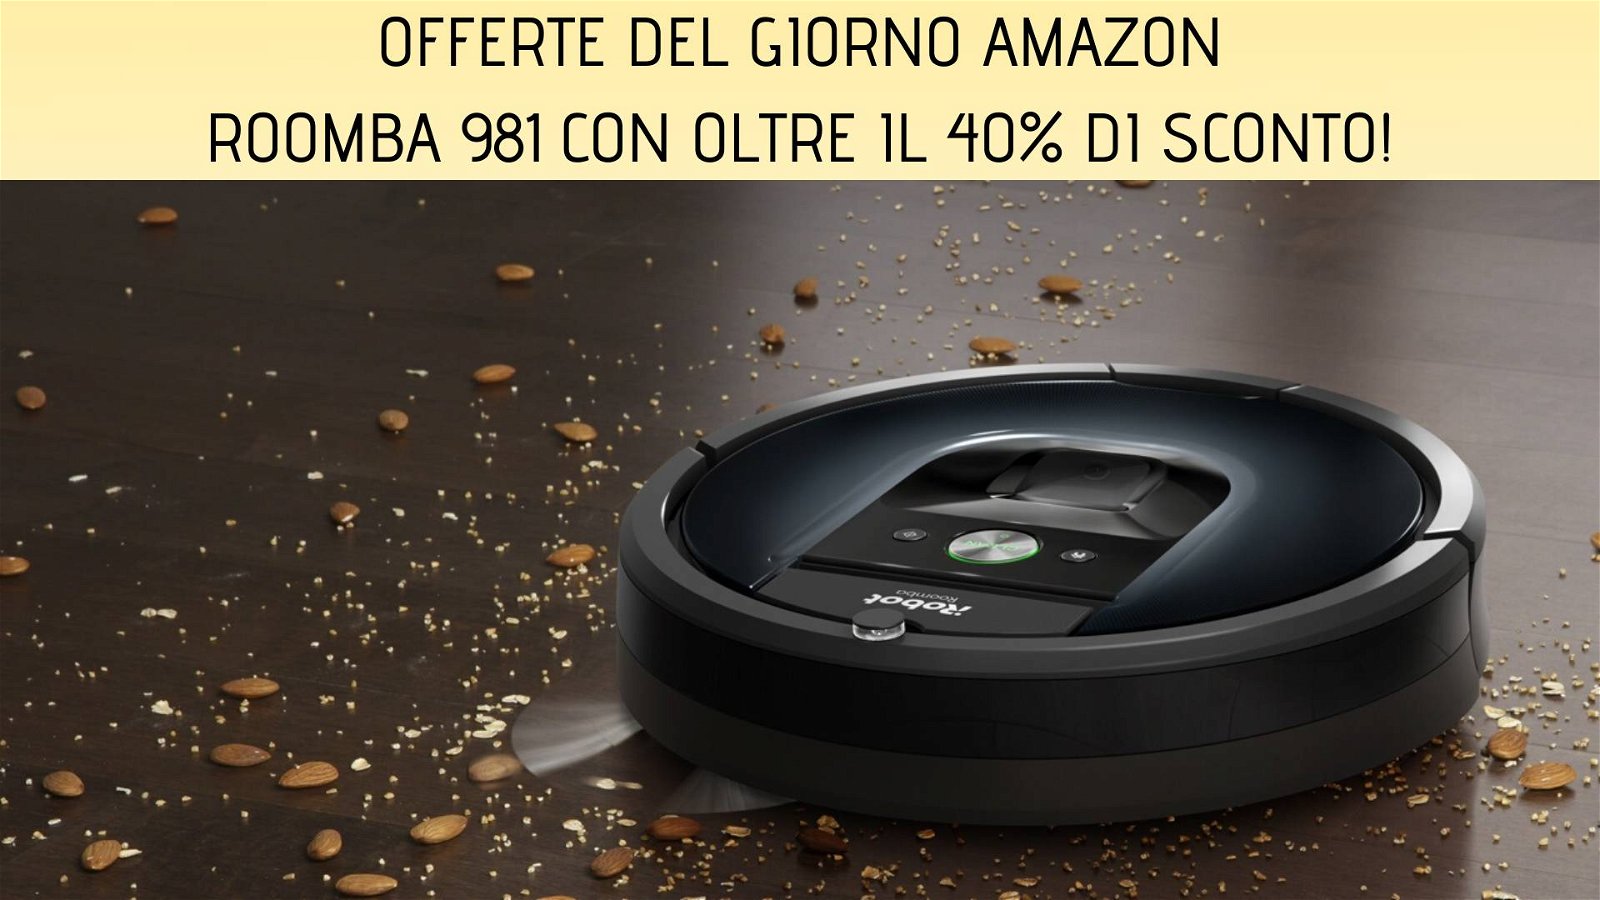 Immagine di Offerte del giorno Amazon: iRobot Roomba 981 con oltre il 40% di sconto!